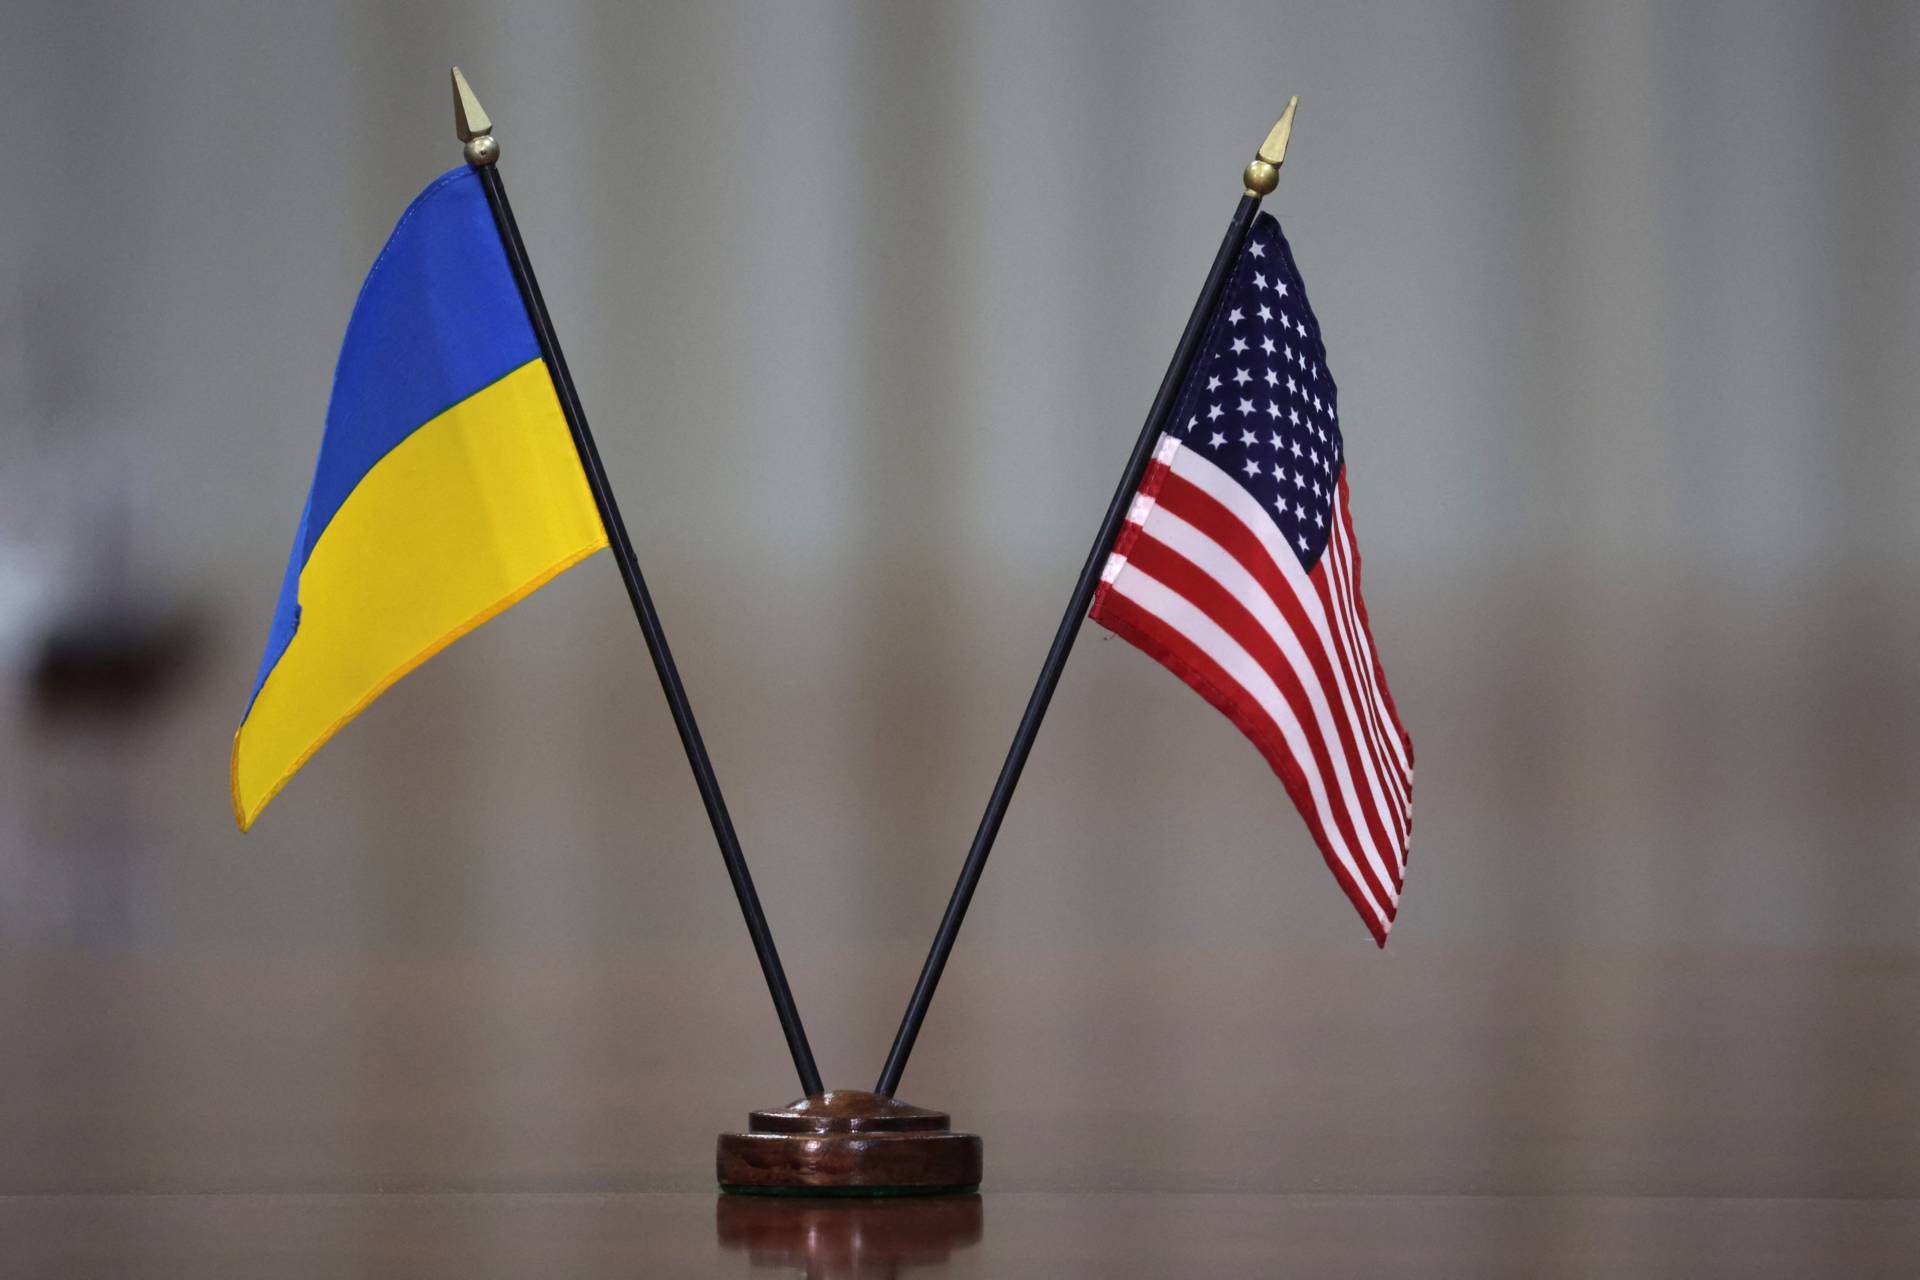 Οι ΗΠΑ "ανησυχούν πολύ" για τις αναφορές σχετικά με την έκρηξη του φράγματος στην Ουκρανία